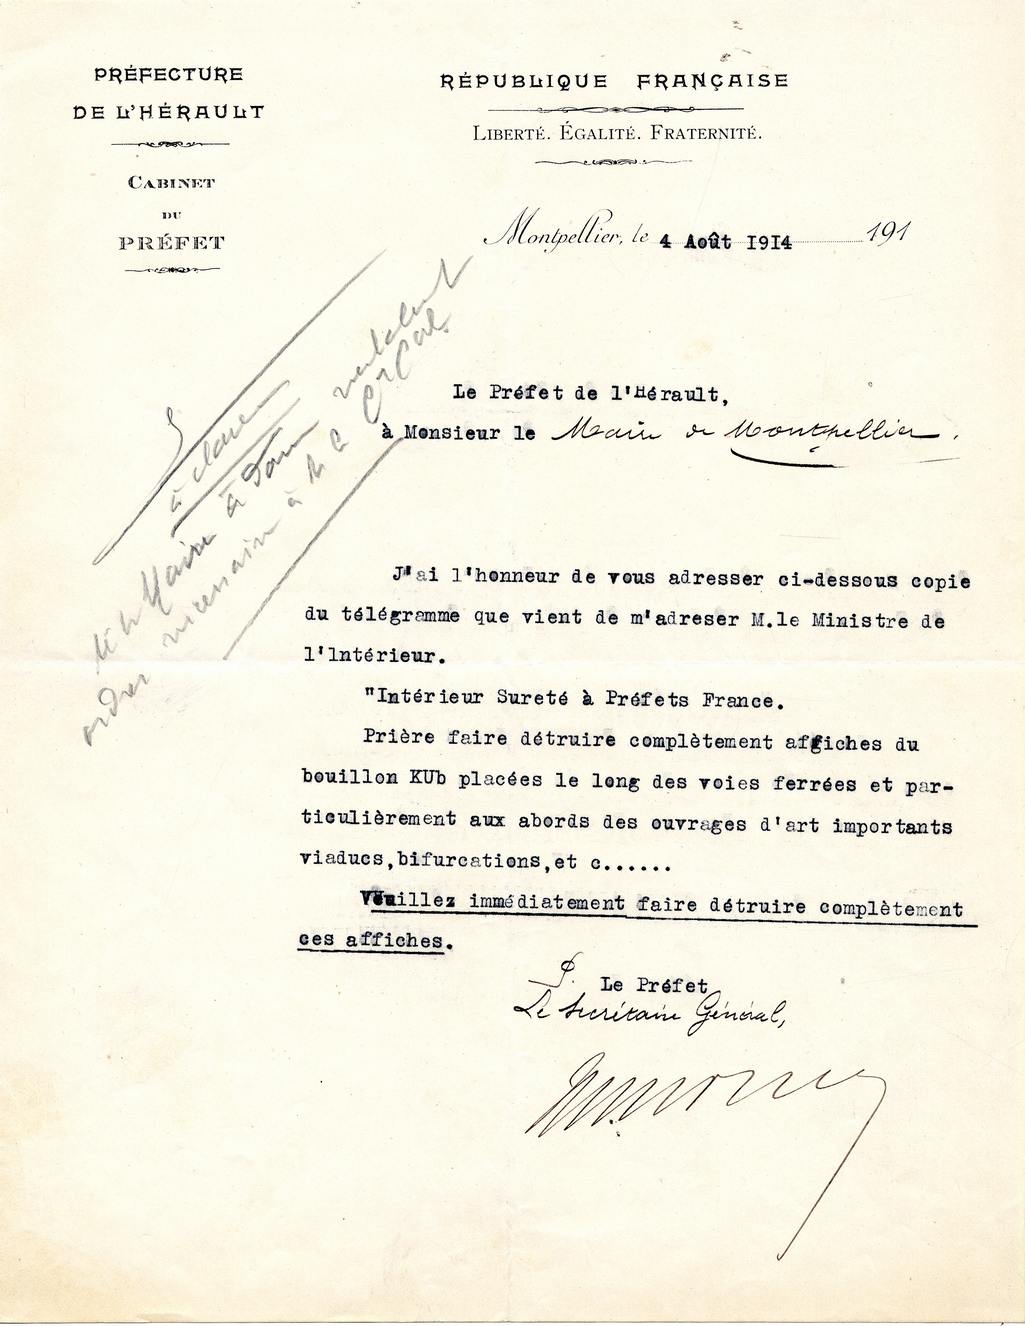 Télégramme ordonnant destruction des affiches Bouillon Kub, 1914. AMM, 5H1